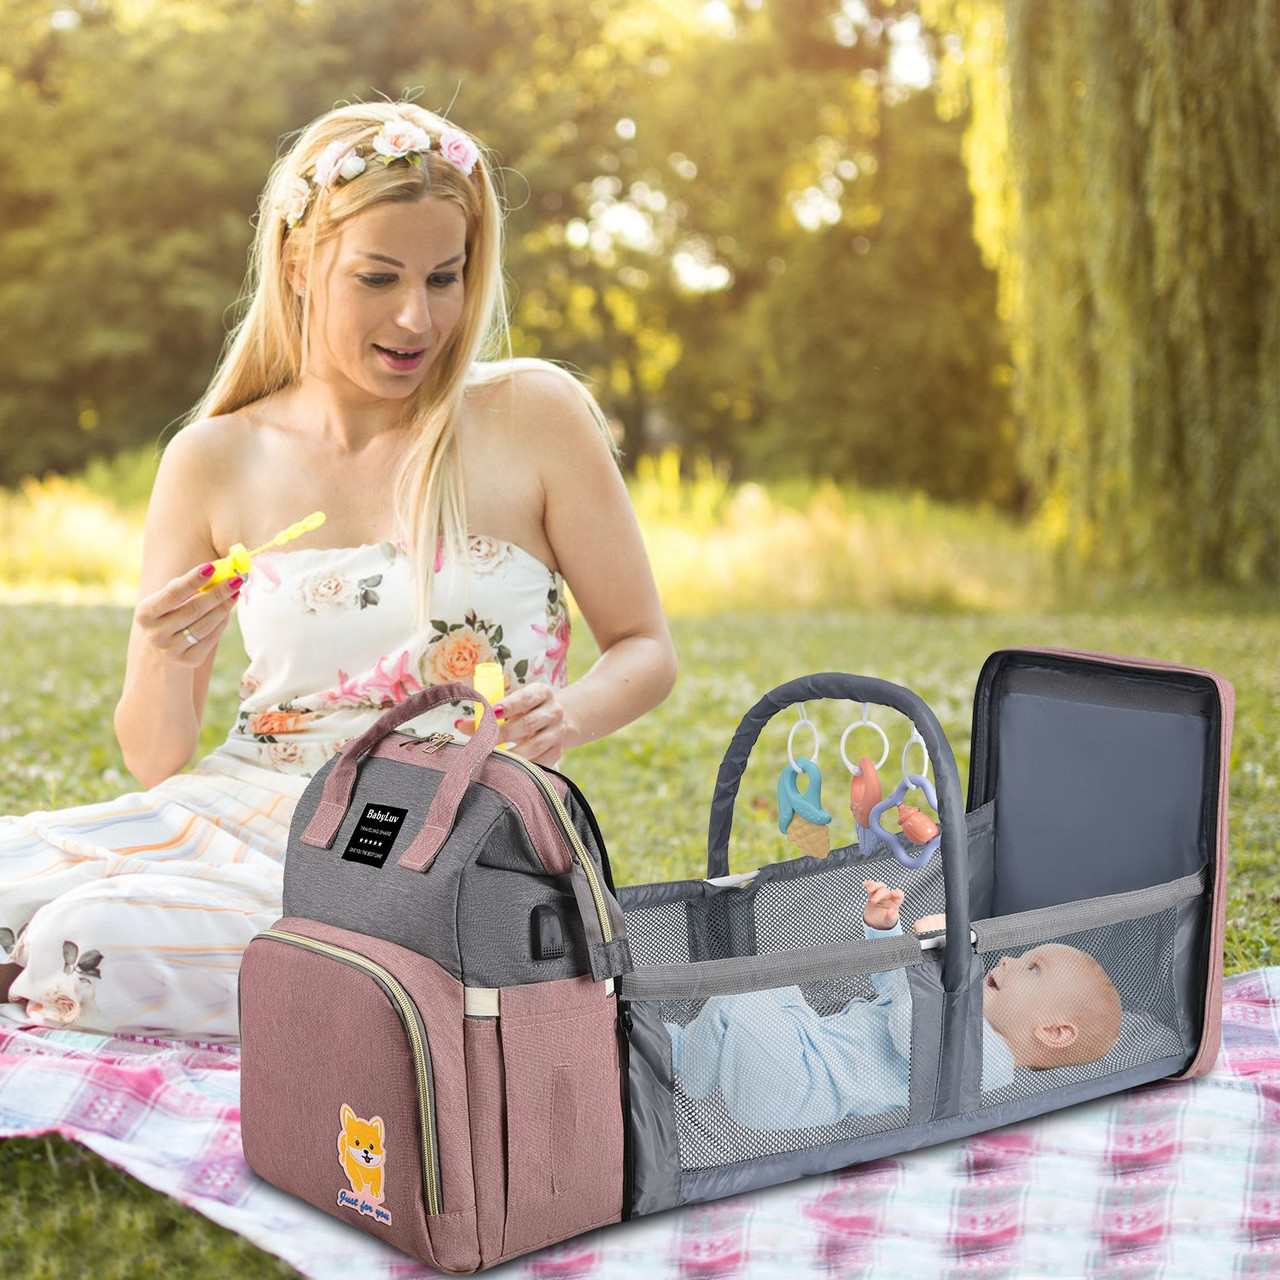 BabyLuv Diaper Bag Backpack product image